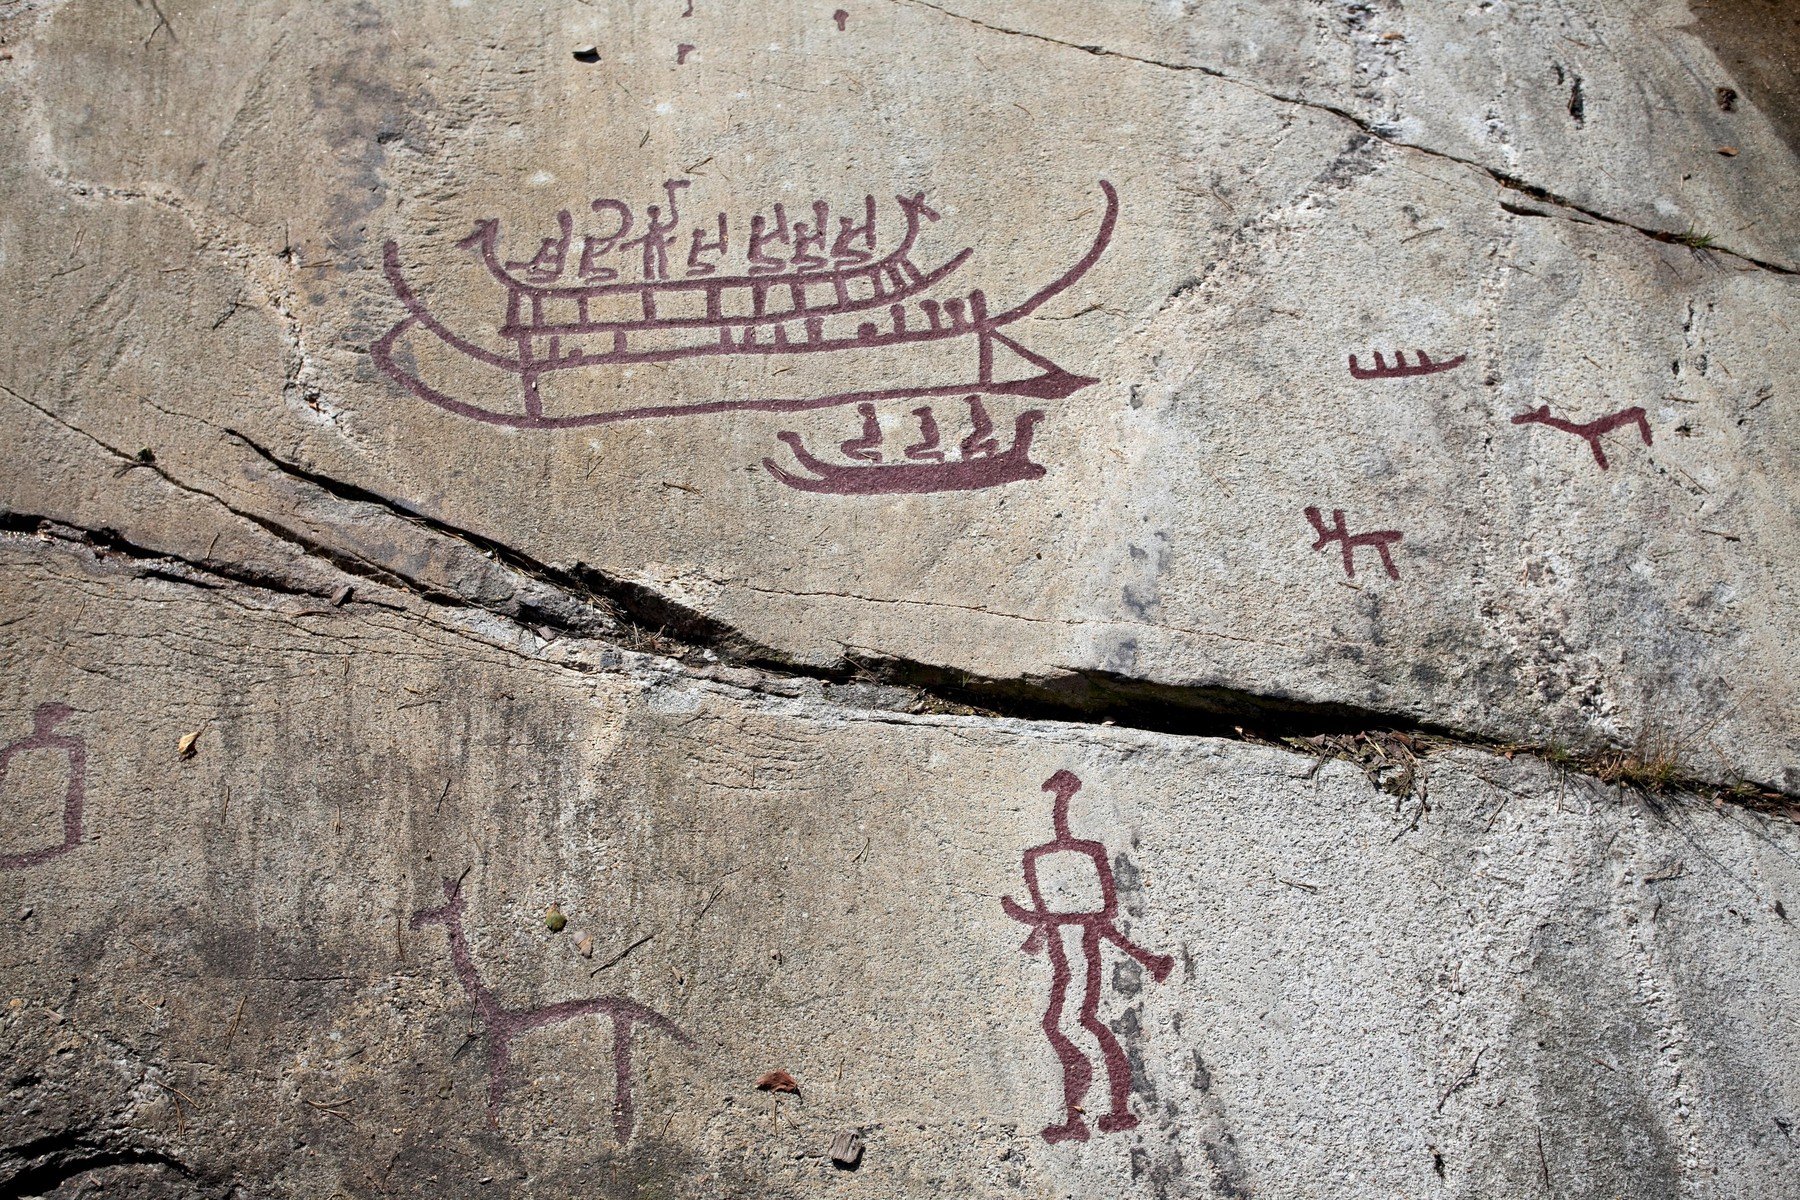 Furcsa írásjeleket találtak perui sziklákba vésve, a jelentésük különös szokásokról árulkodik